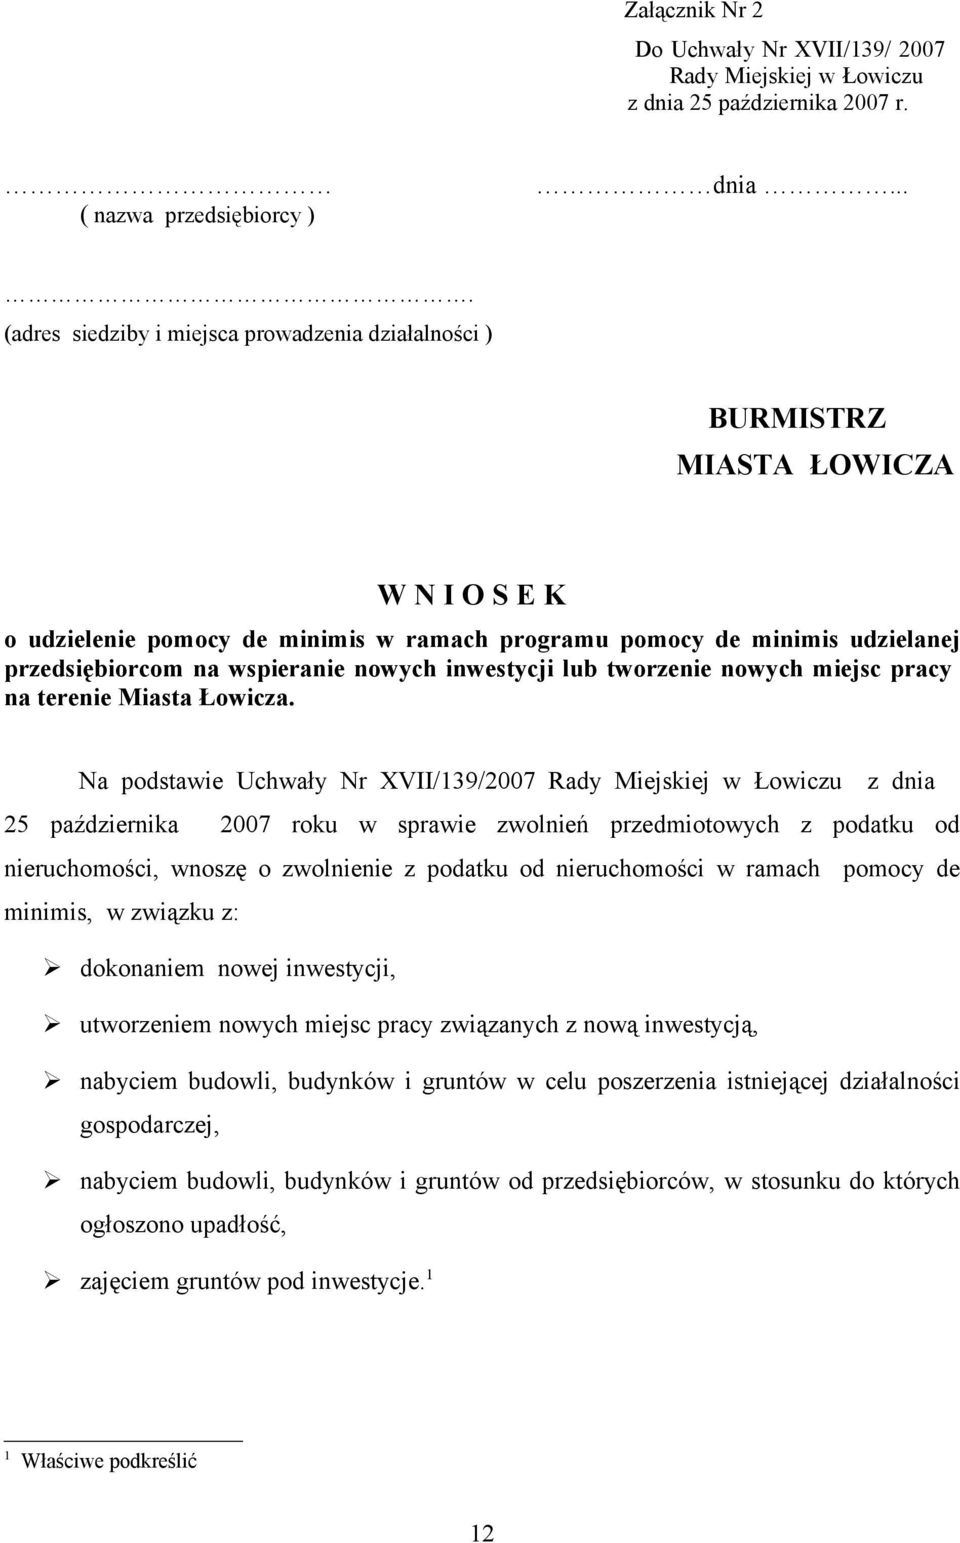 wspieranie nowych inwestycji lub tworzenie nowych miejsc pracy na terenie Miasta Łowicza.